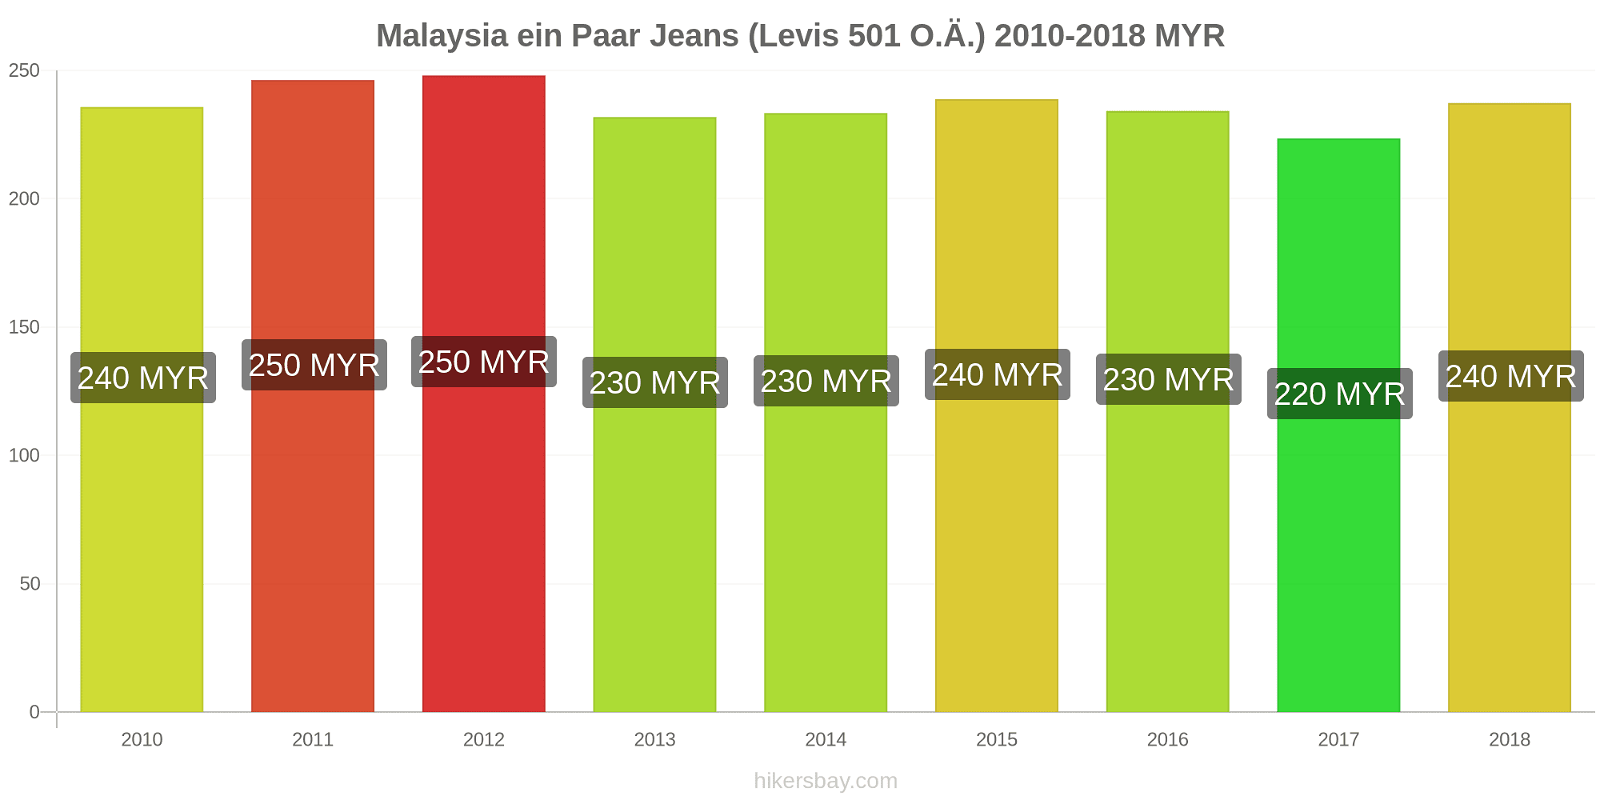 Malaysia Preisänderungen 1 Paar Jeans (Levis 501 oder ähnlich) hikersbay.com